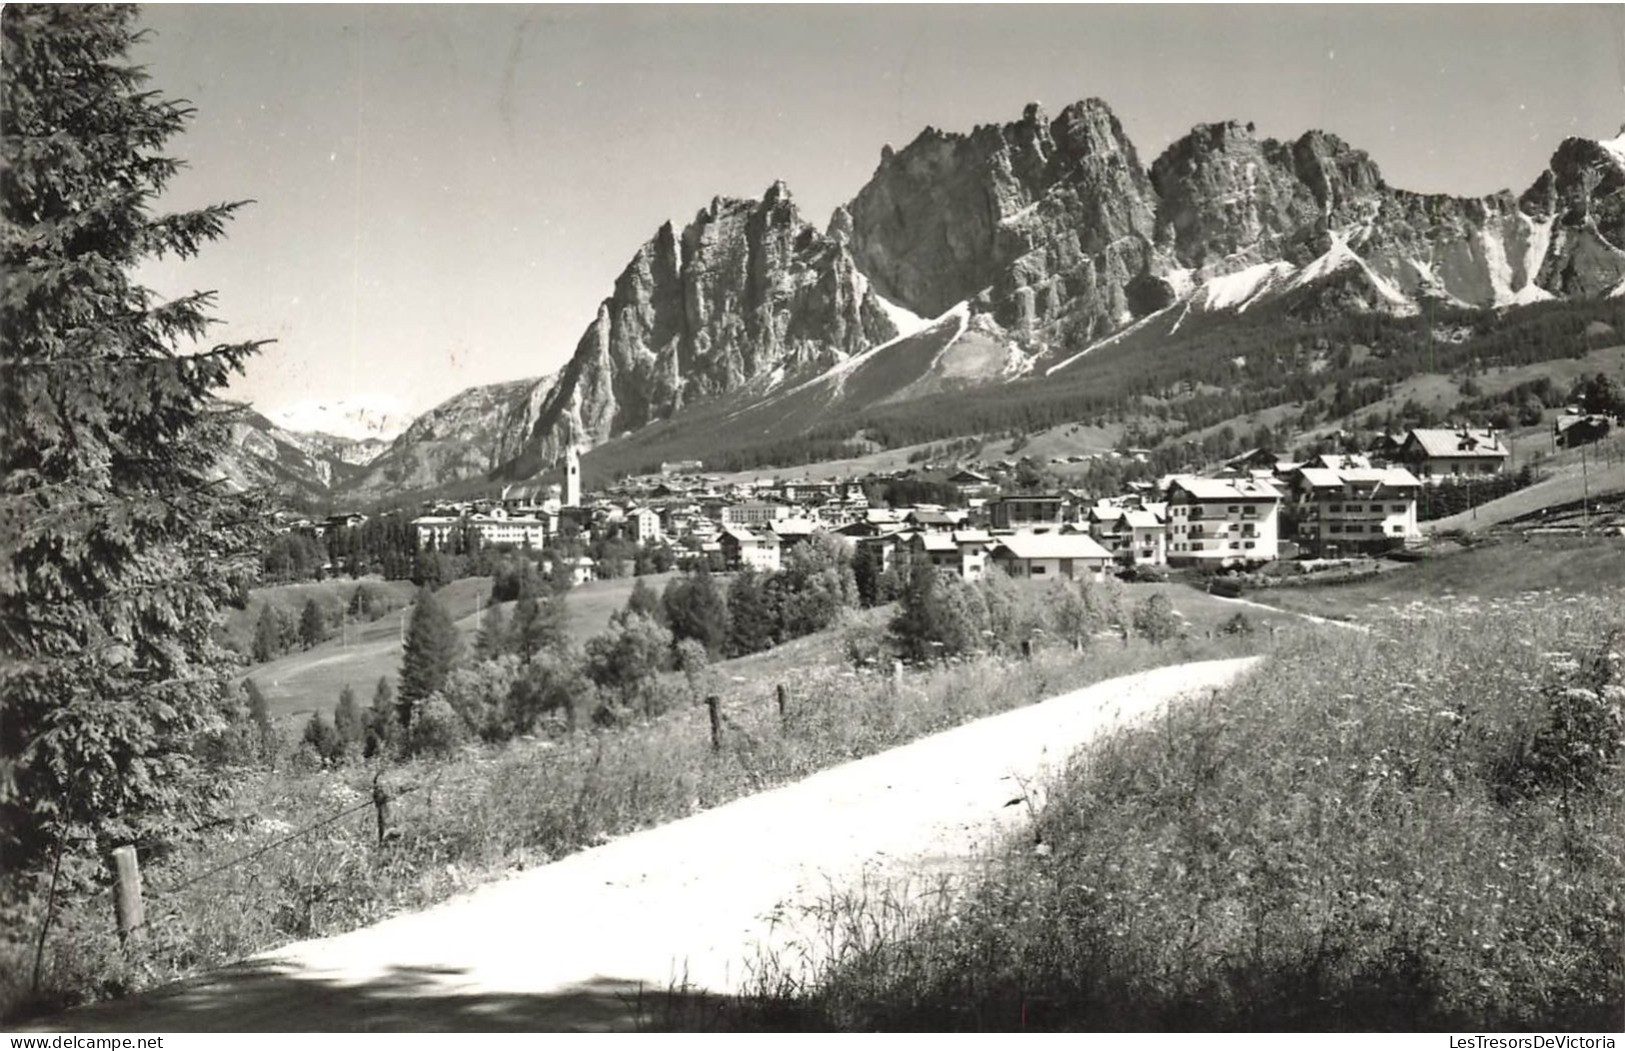 ITALIE - Belluno - Pomagagnon - Cortina - Carte Postale Ancienne - Belluno